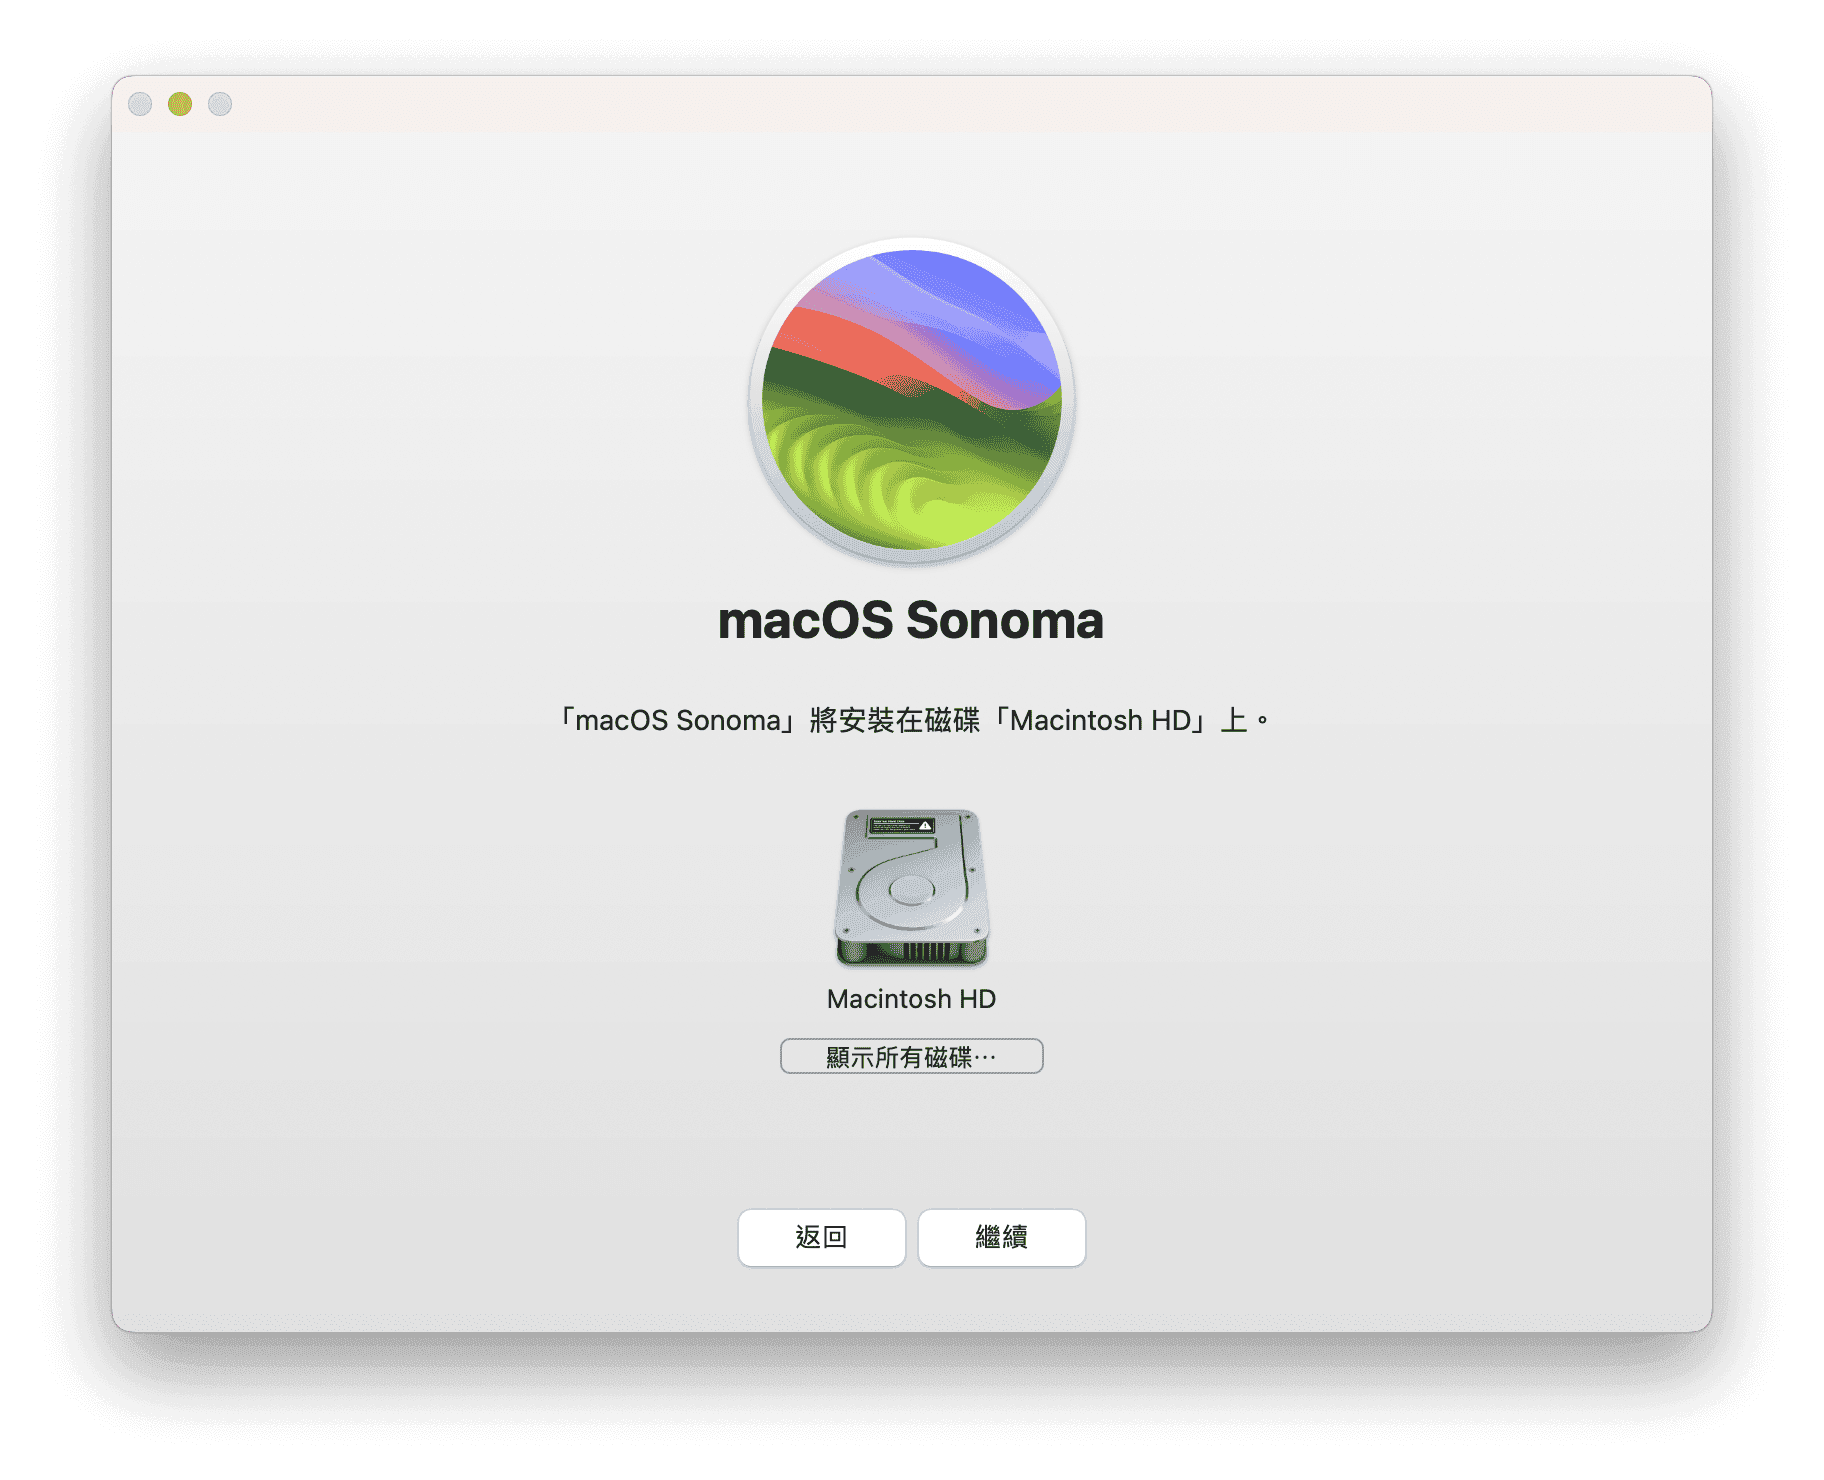 選取要安裝 macOS Sonoma 的磁碟